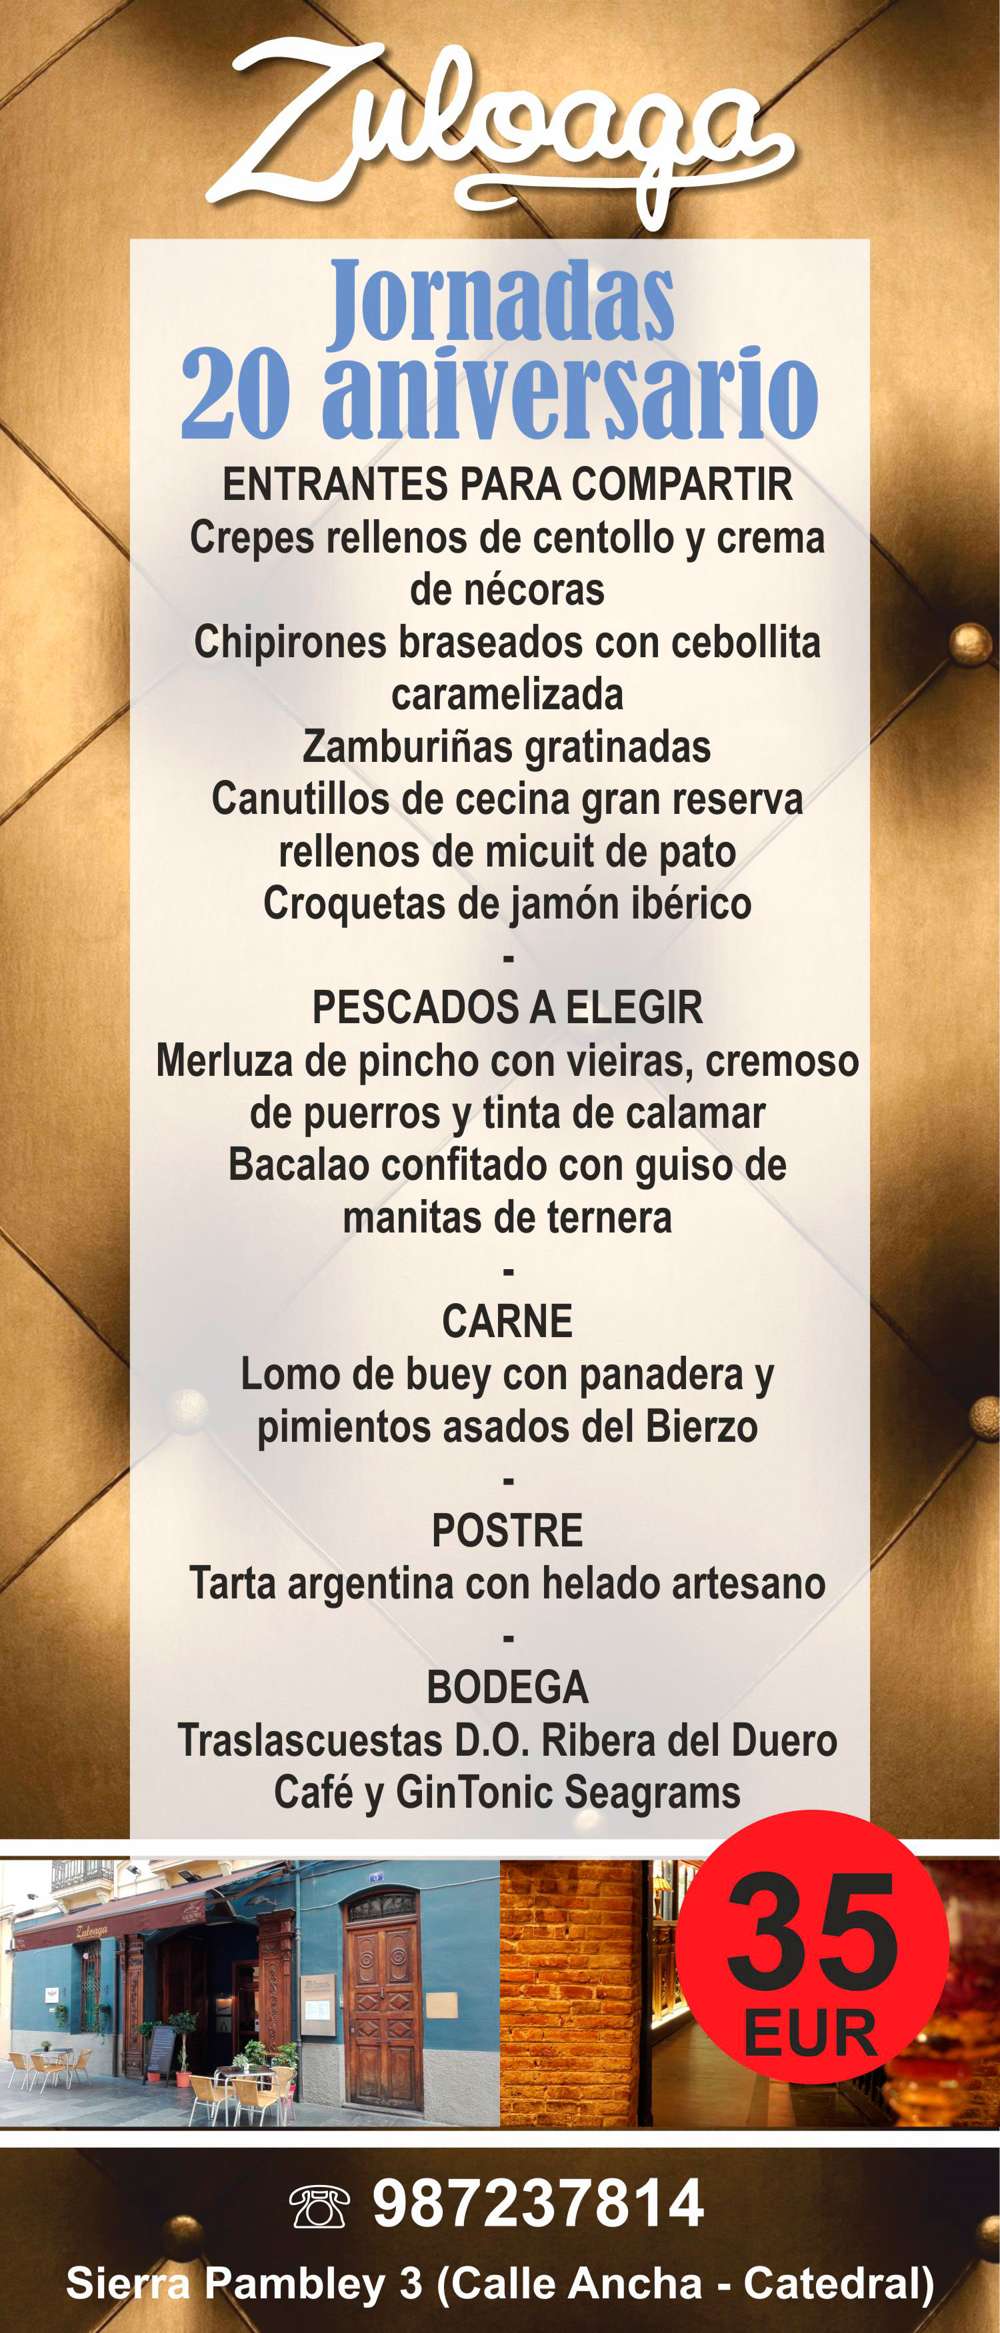 Restaurante Zuloaga - Menú 20 Aniversario